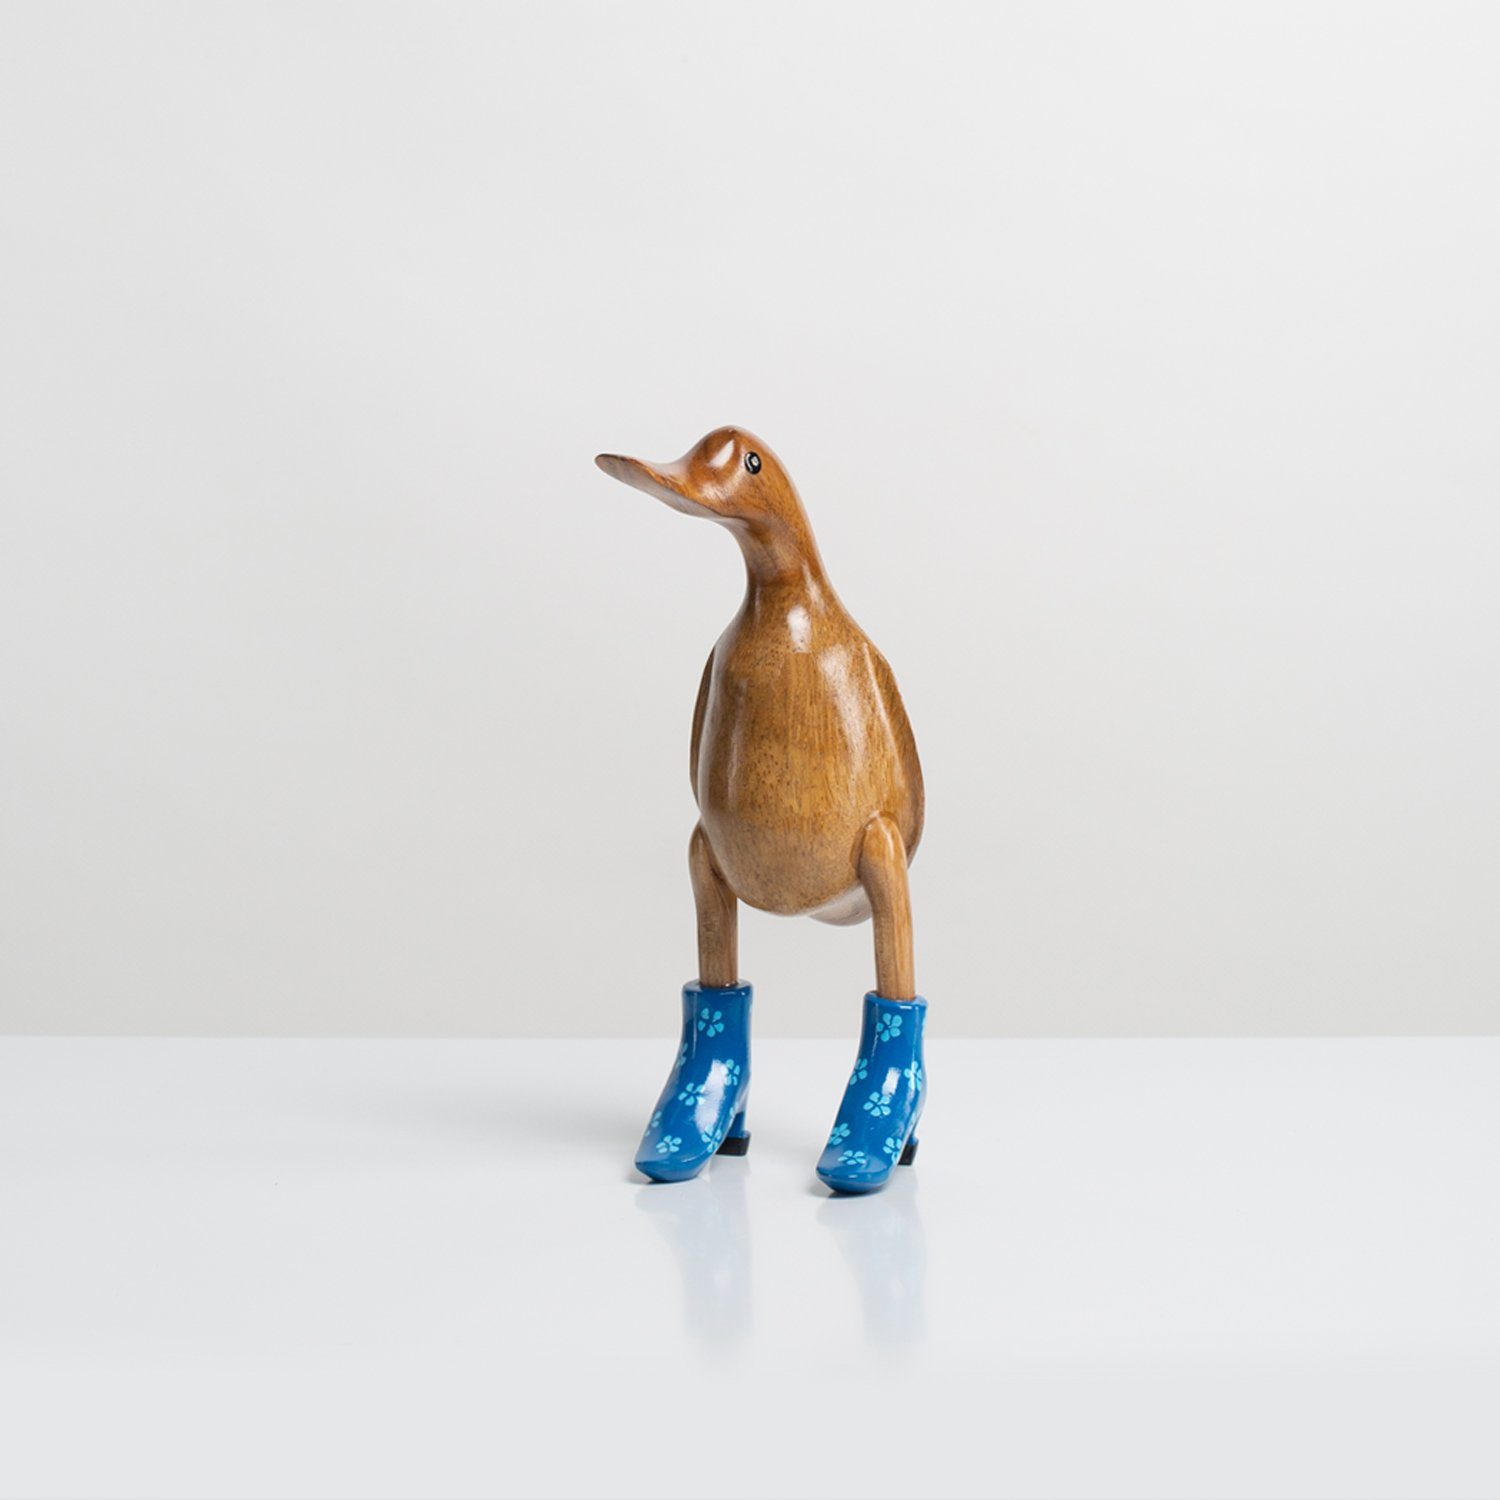 Rikmani Dekofigur Ente Stiefel aus Absätze - Dekoration Holz blau Handgefertigte